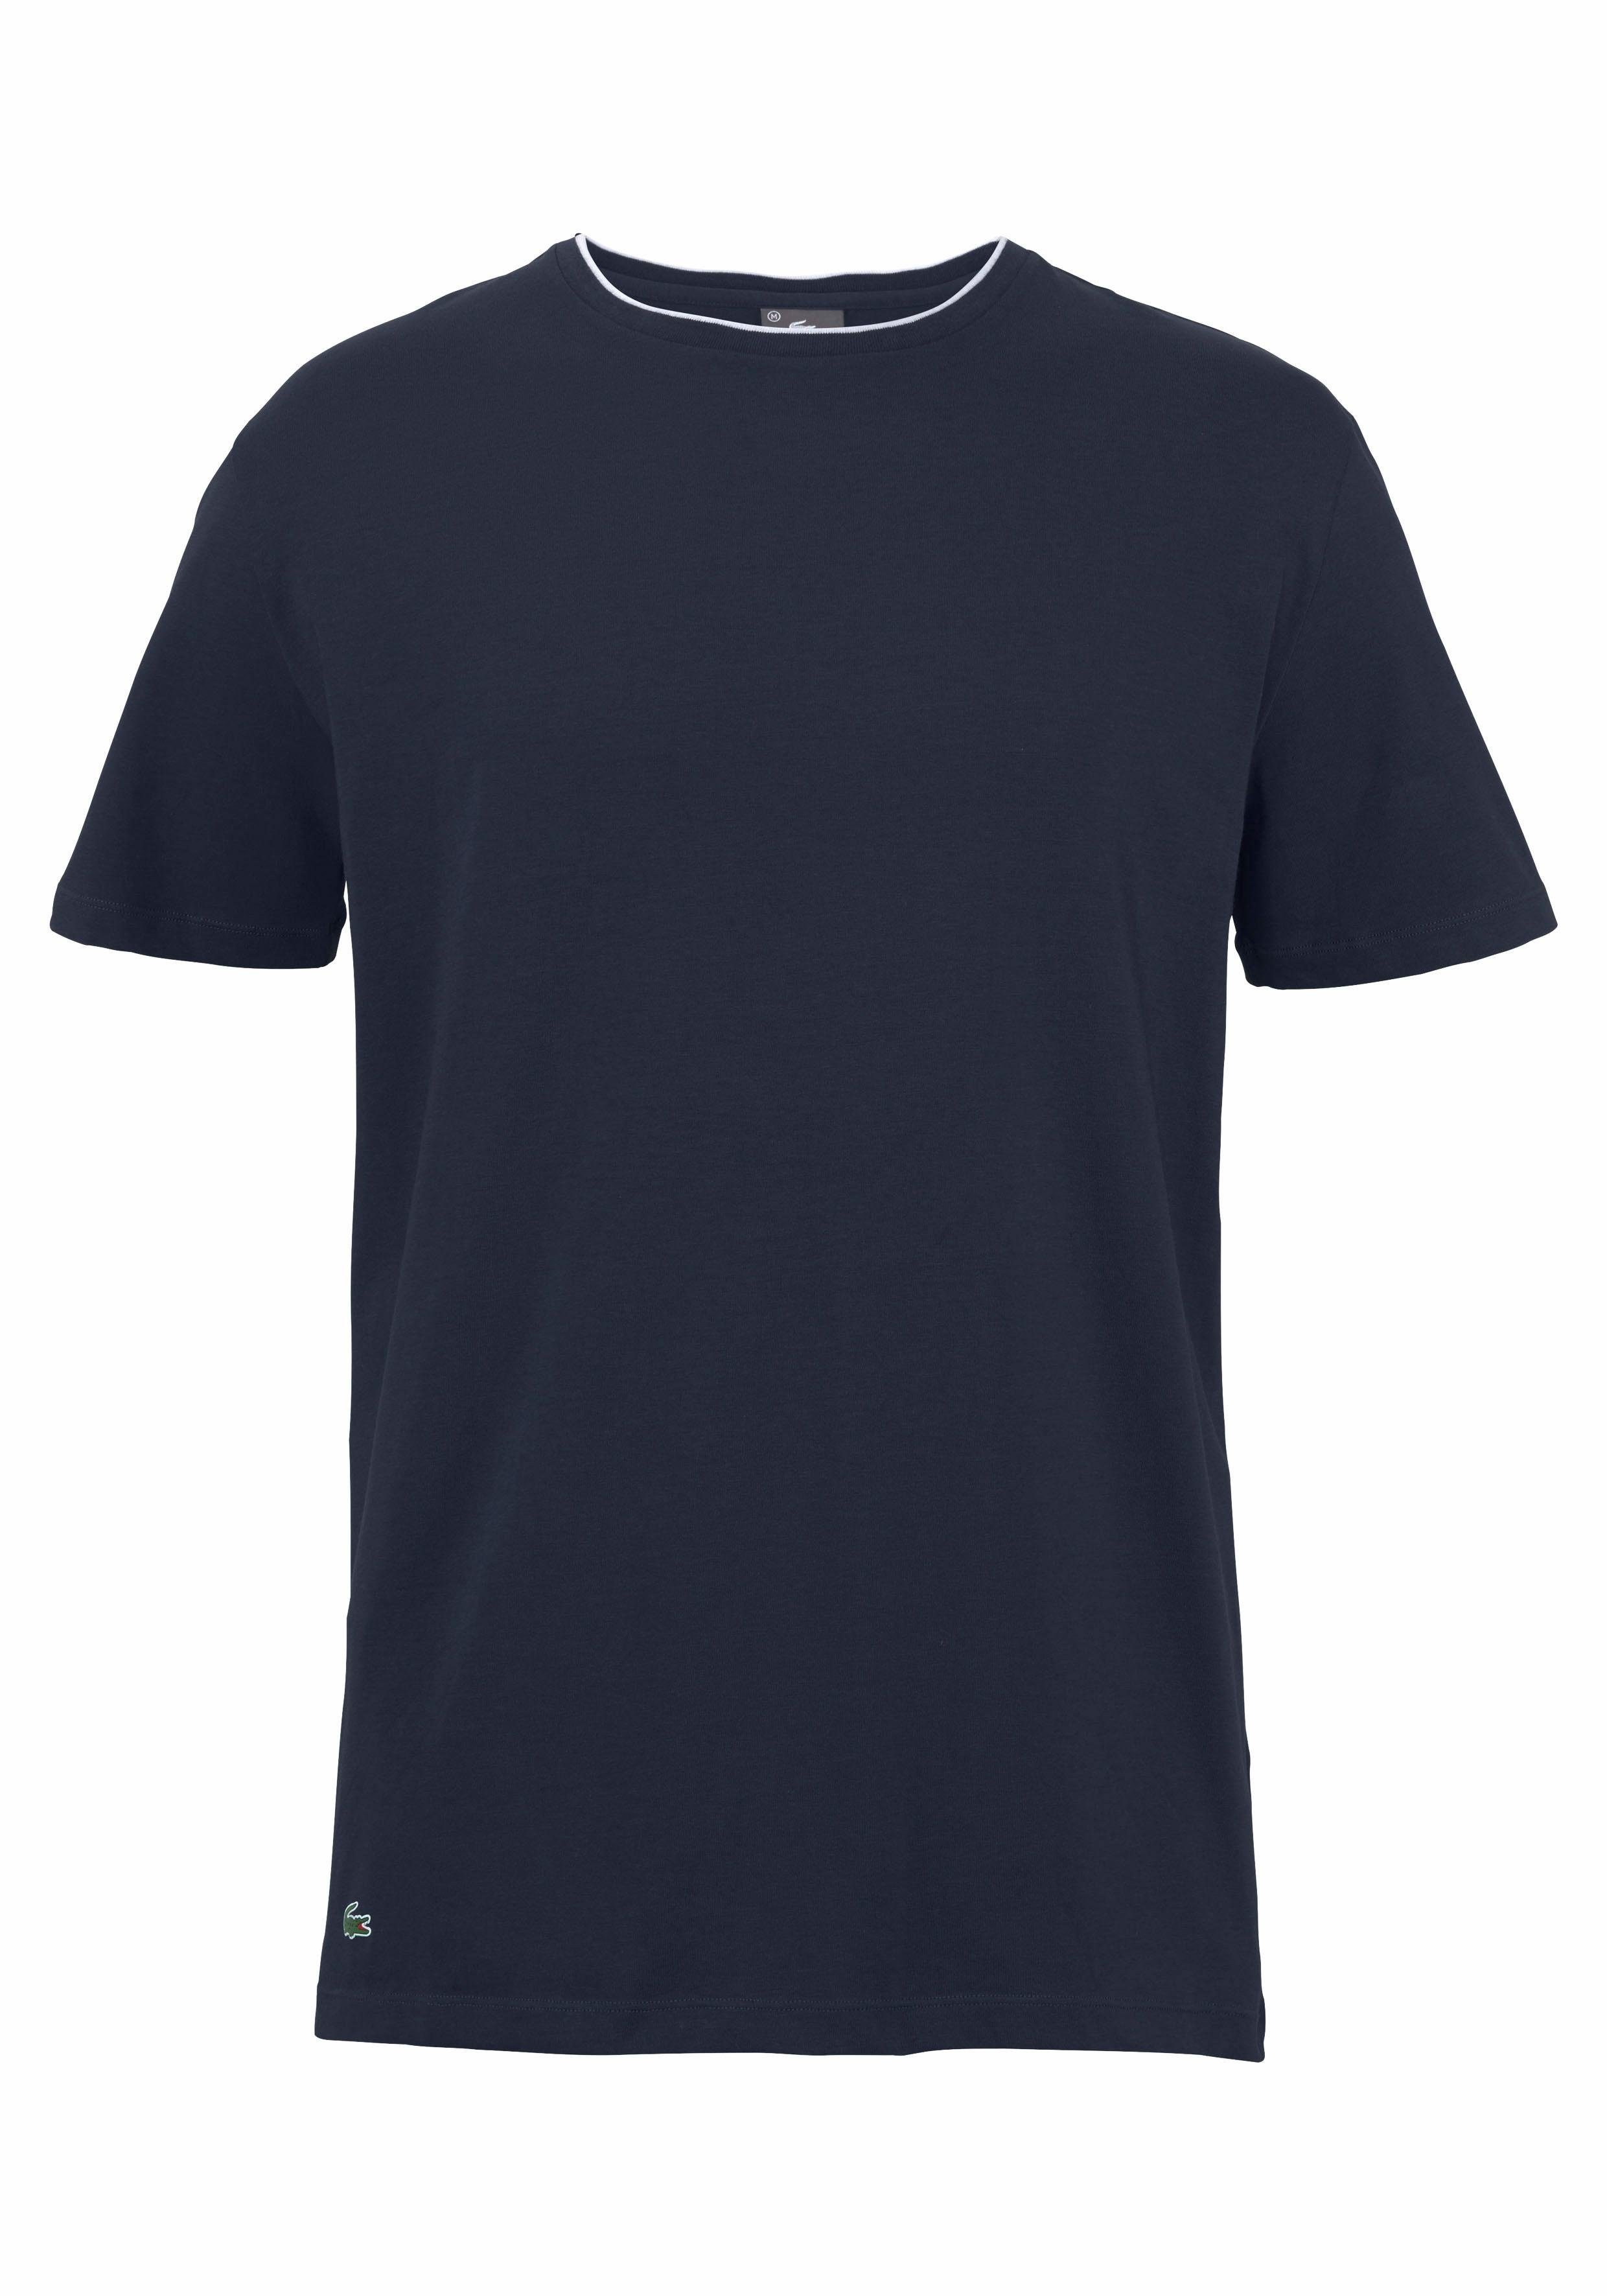 Otto - Lacoste NU 15% KORTING: Lacoste T-shirt Sleepwear